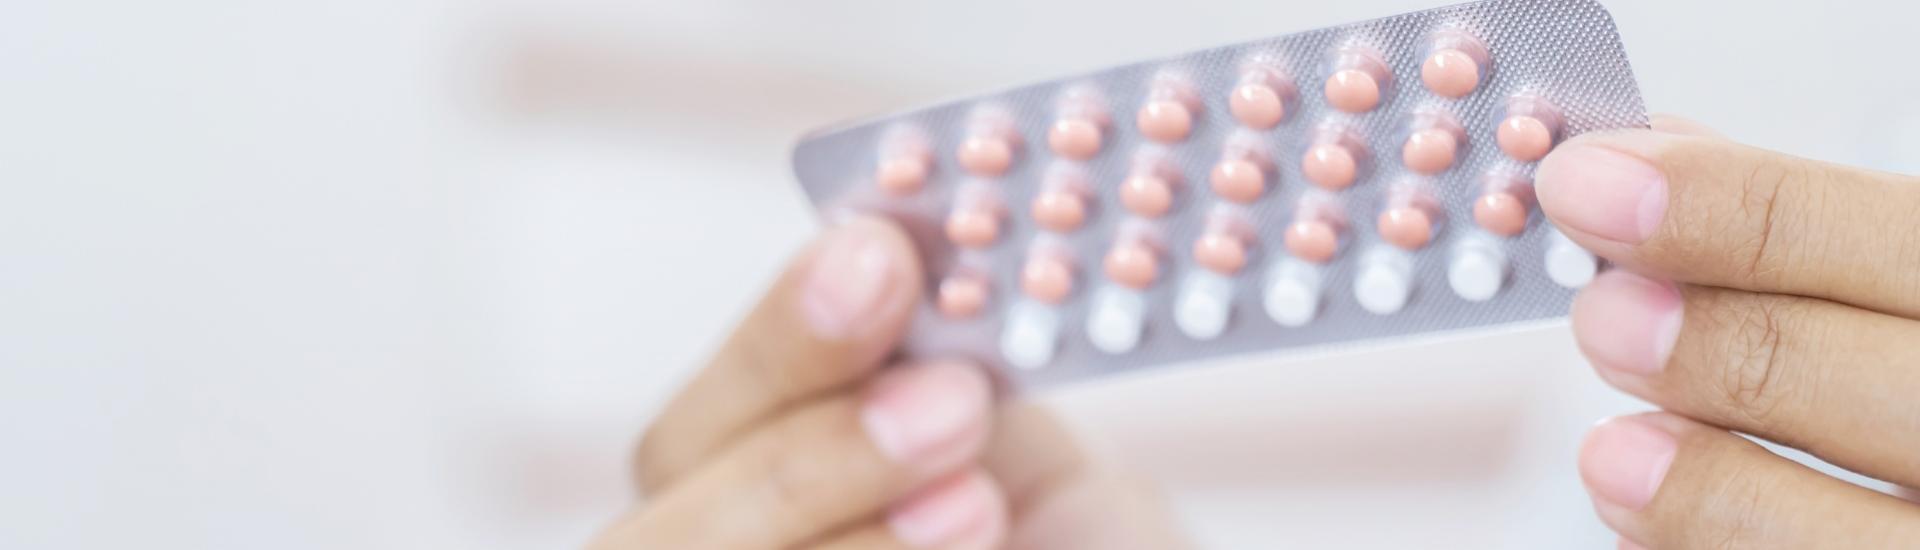 Vanaf 2 juli: anticonceptie bij Zuiver